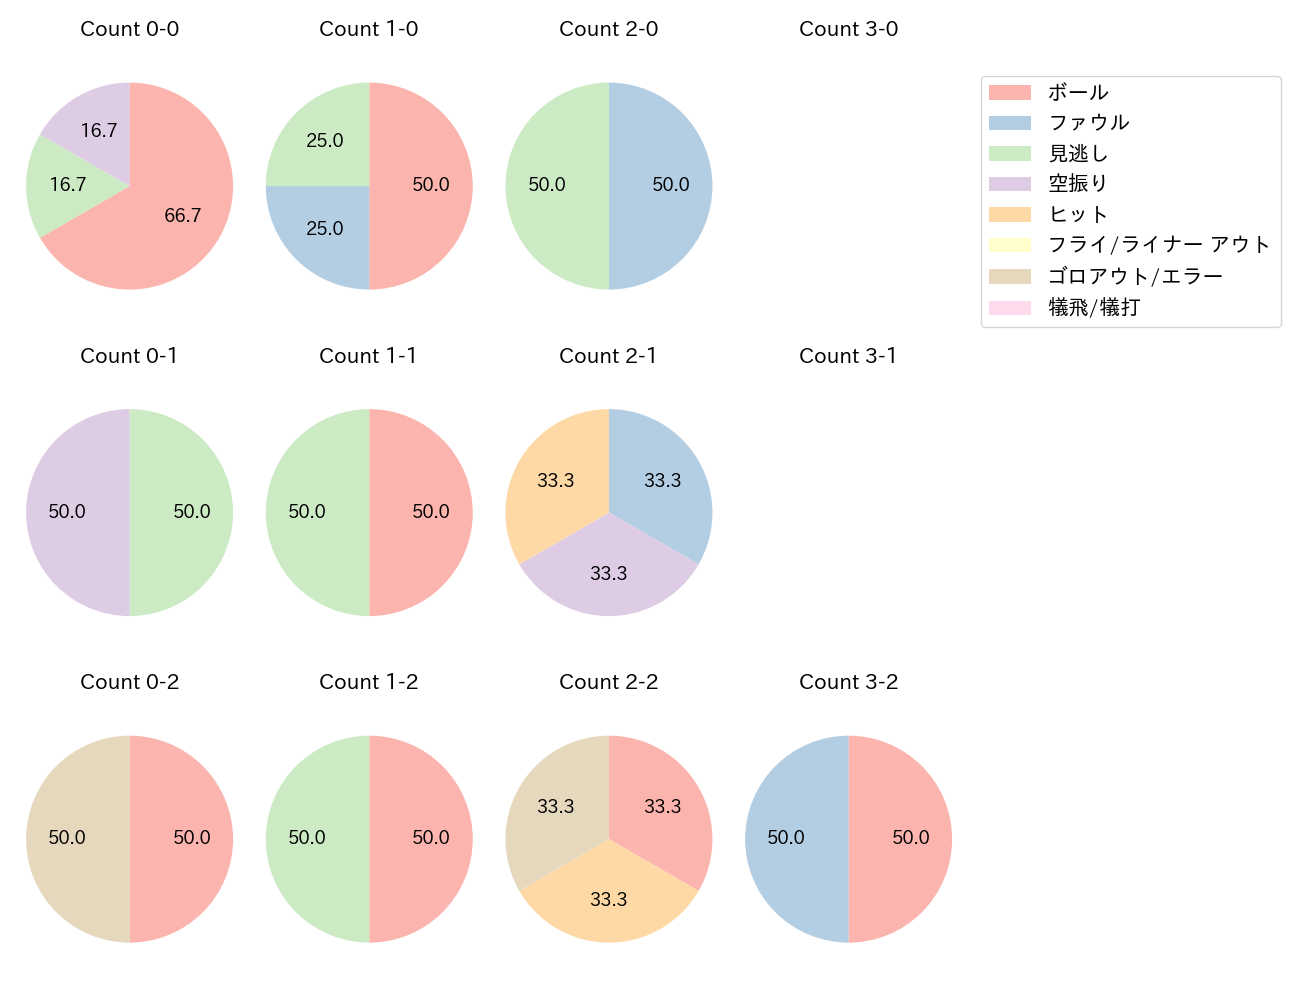 田中 和基の球数分布(2022年7月)